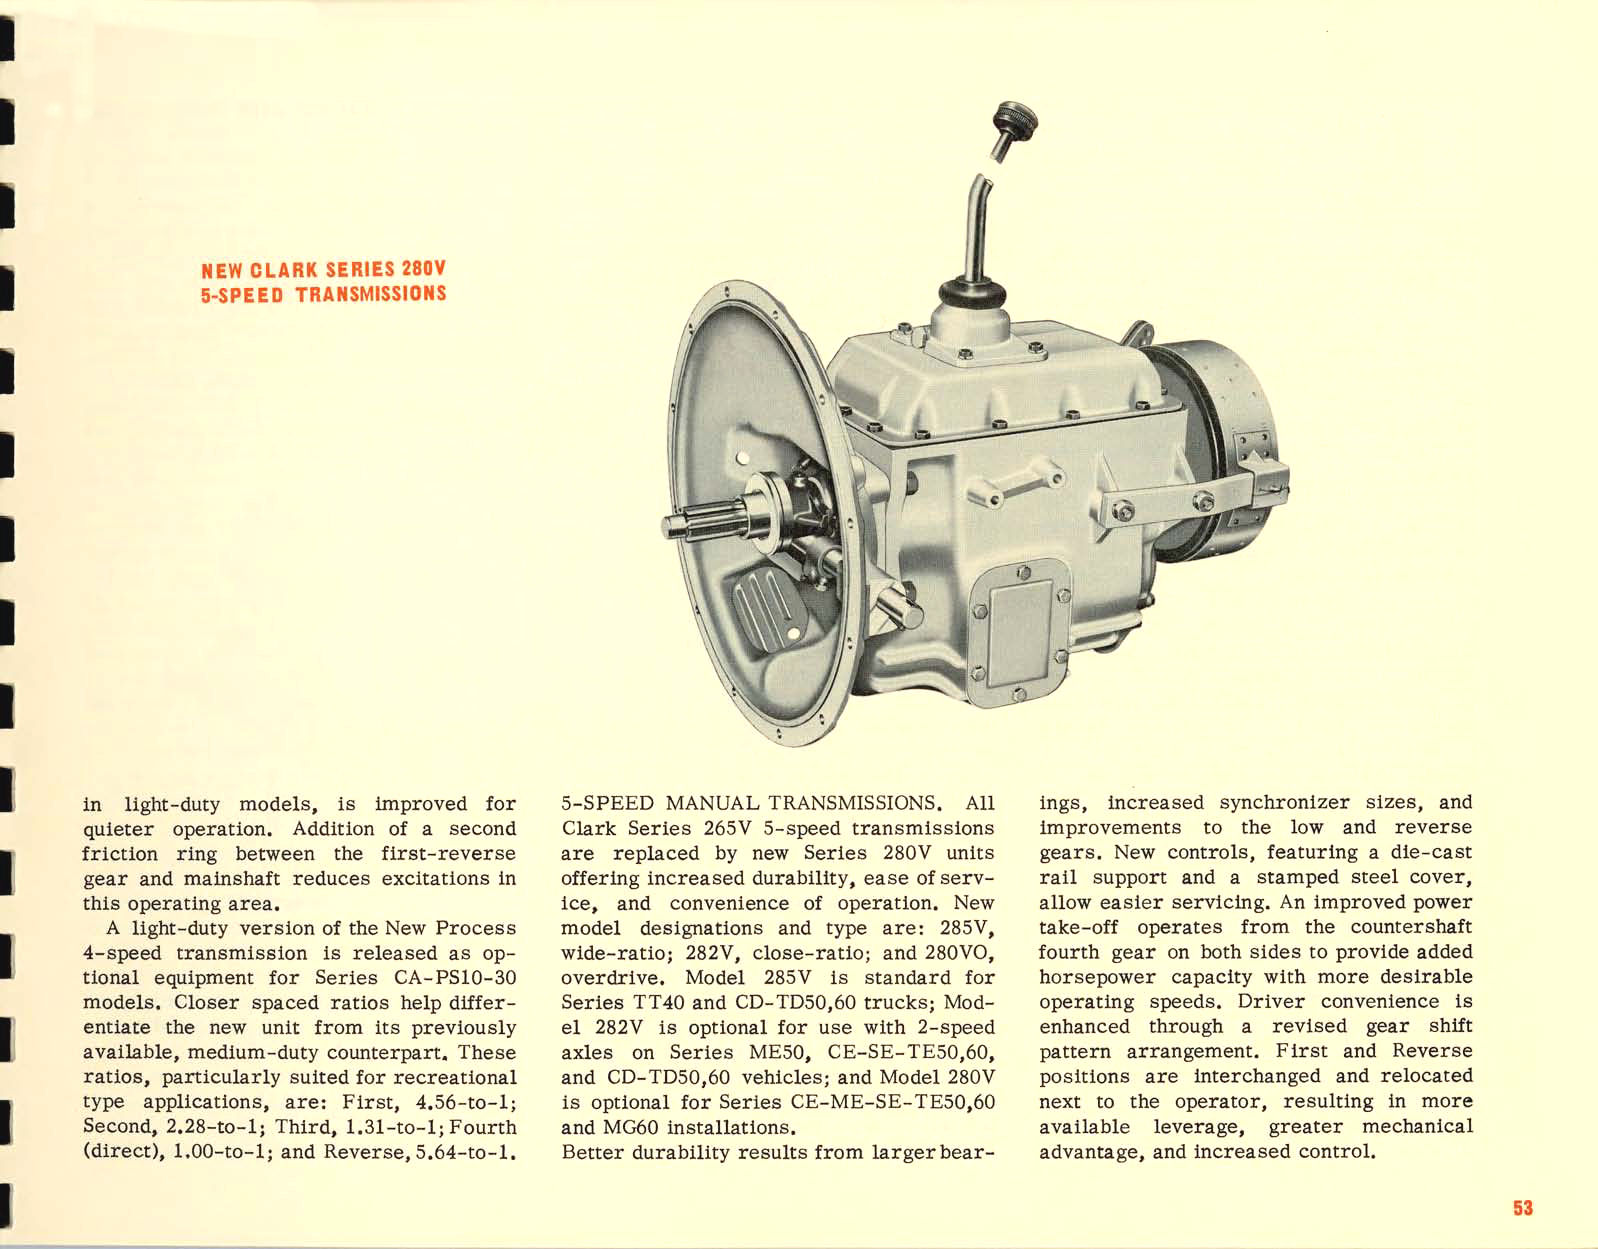 1967_Chevrolet_Truck_Engineering_Features-53